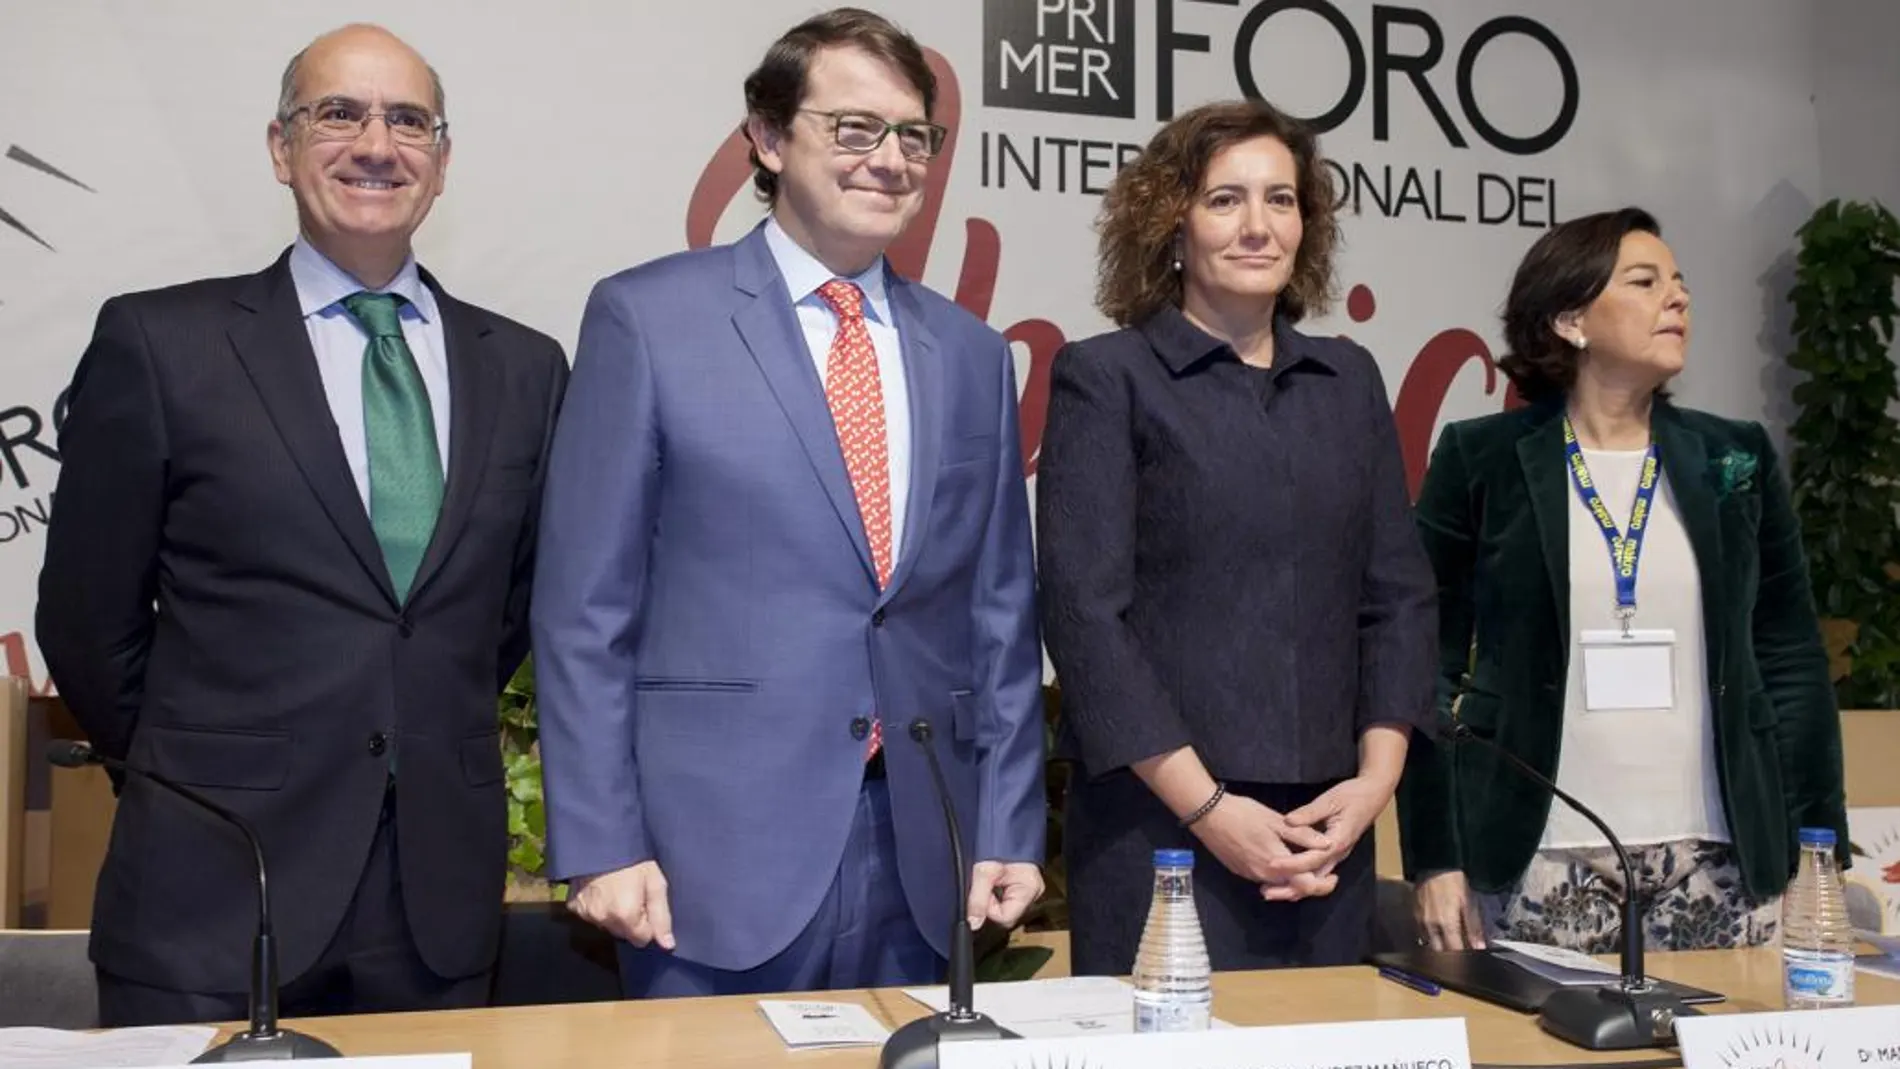 La consejera García Cirac, junto a Javier Iglesias, Alfonso Fernández Mañueco y Julia Pérez Lozano